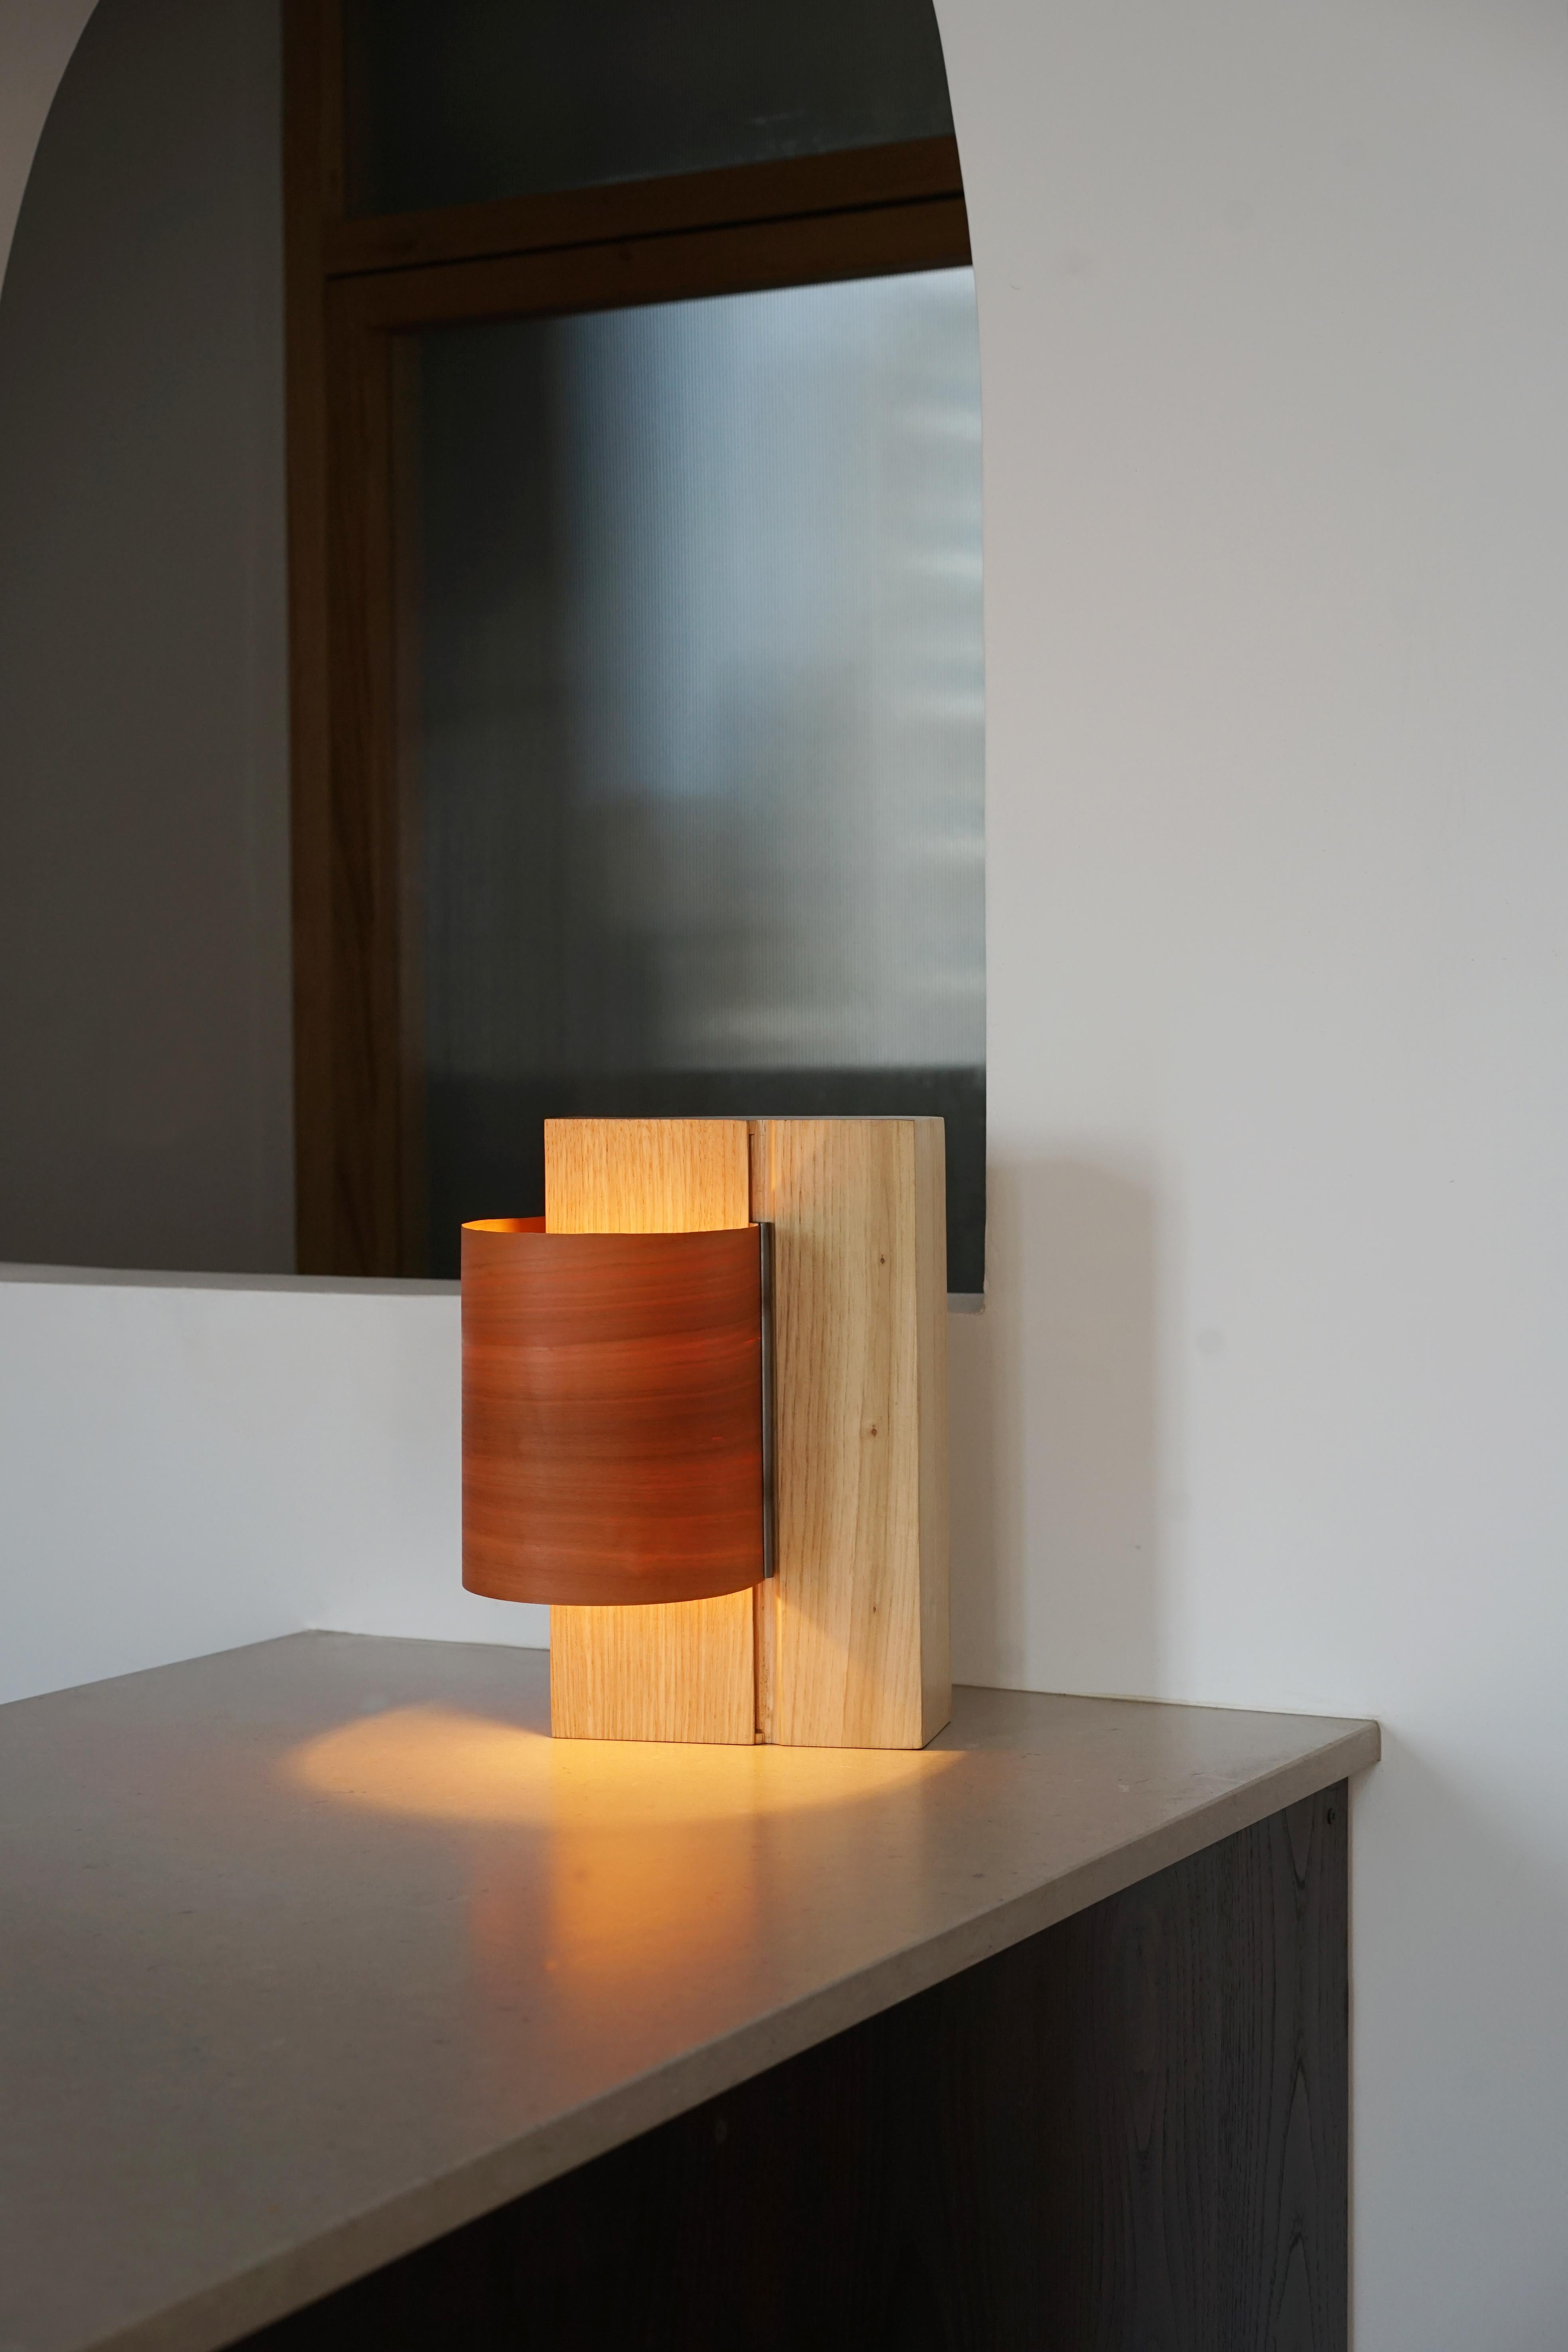 Cette lampe de table célèbre les qualités intrinsèques du placage de bois, en particulier sa finesse et son grain. Grâce à un système coulissant en acier inoxydable, la feuille de placage se déplace de haut en bas pour orienter la lumière selon vos